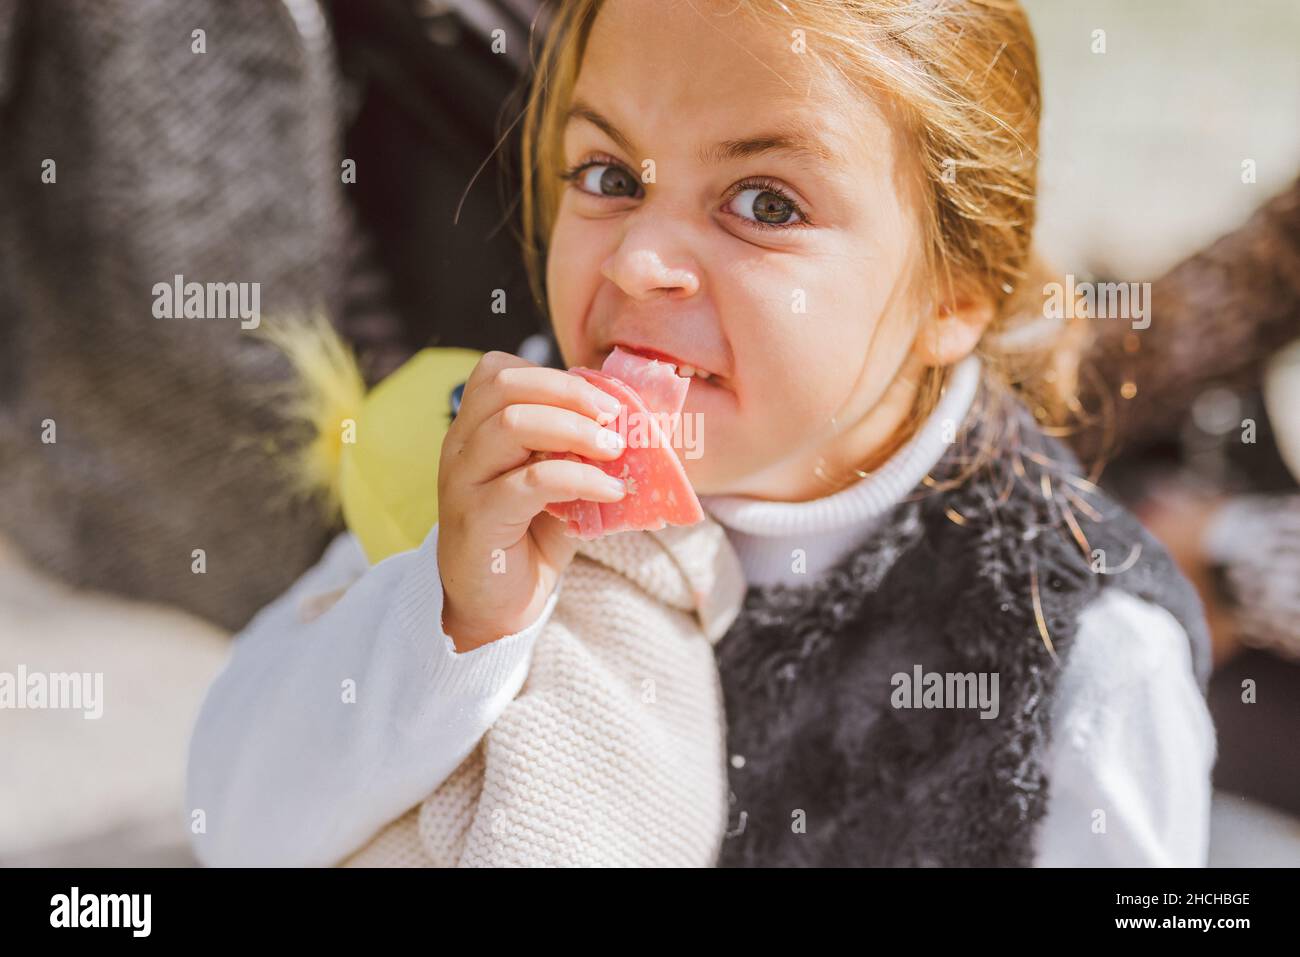 Chica caucásica haciendo una cara fea mientras come bolonia. Foto de stock